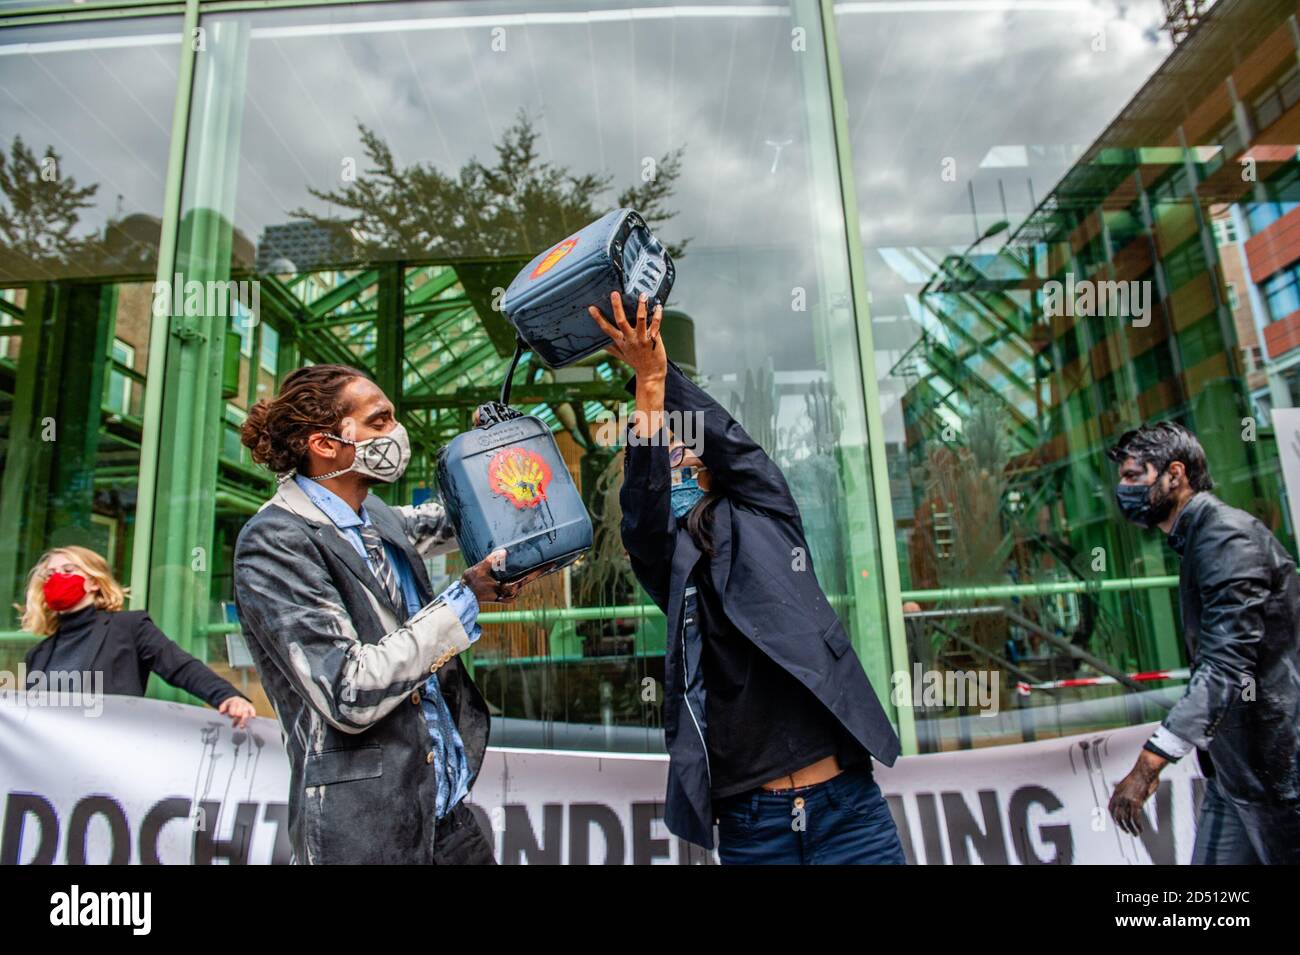 Klimaaktivisten gaben vor, aus gefälschten Ölflaschen zu trinken.das Wirtschaftsministerium (EZK) organisiert einen Klimatag mit dem Ziel, die Niederlande mit "Spitzenreitern" zu inspirieren, die Treibhausgasemissionen bis 2030 zu halbieren. Verschiedene Klimagruppen protestieren gegen die Teilnahme von Marjan van Loon, Direktor von Shell Netherlands. Im Eröffnungspanel des Klimatages. Mehrere Klimaorganisationen tauchten vor dem Gebäude des Ministeriums für Wirtschaft und Klimapolitik in Den Haag gegen Shell als Ehrengast am "Klimatag" auf. Die Klimaaktivisten wir Stockfoto